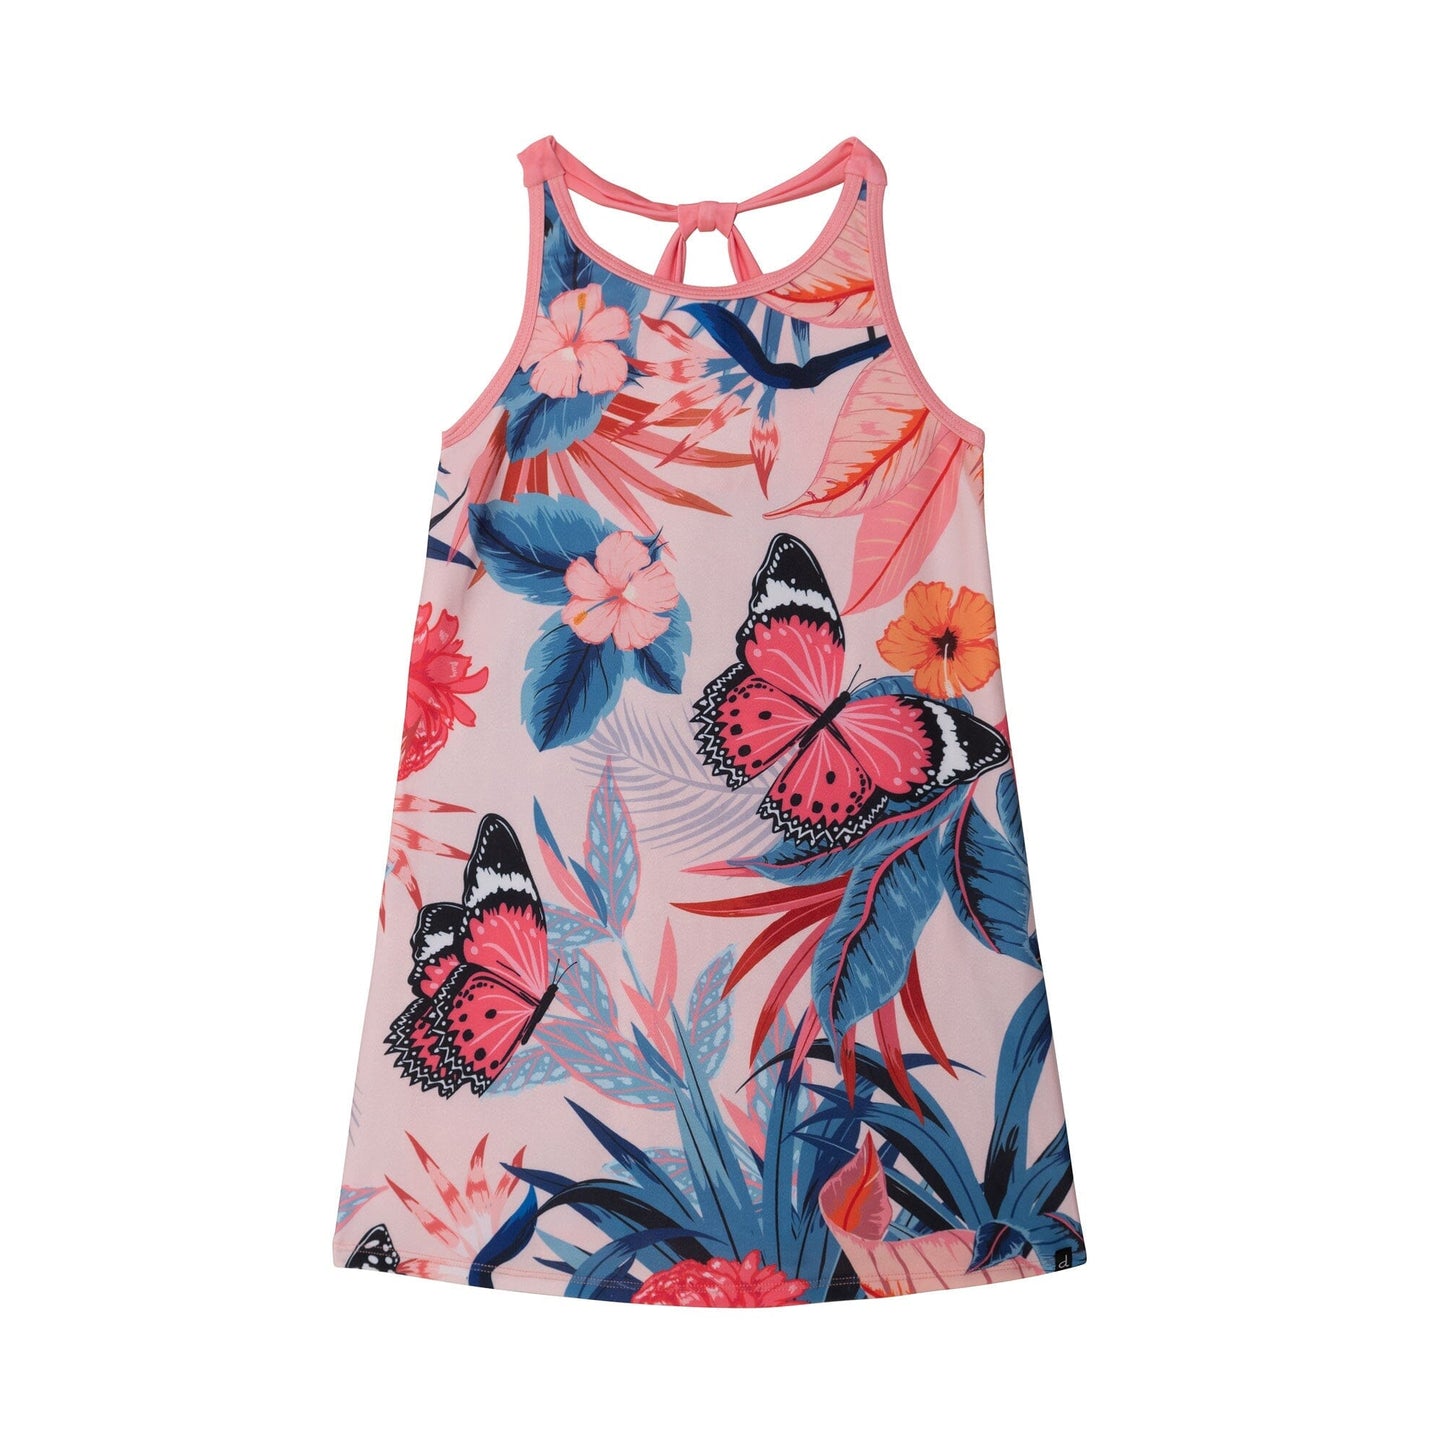 Printed Beach Dress Pink & Blue Butterflies - E30NG89_000